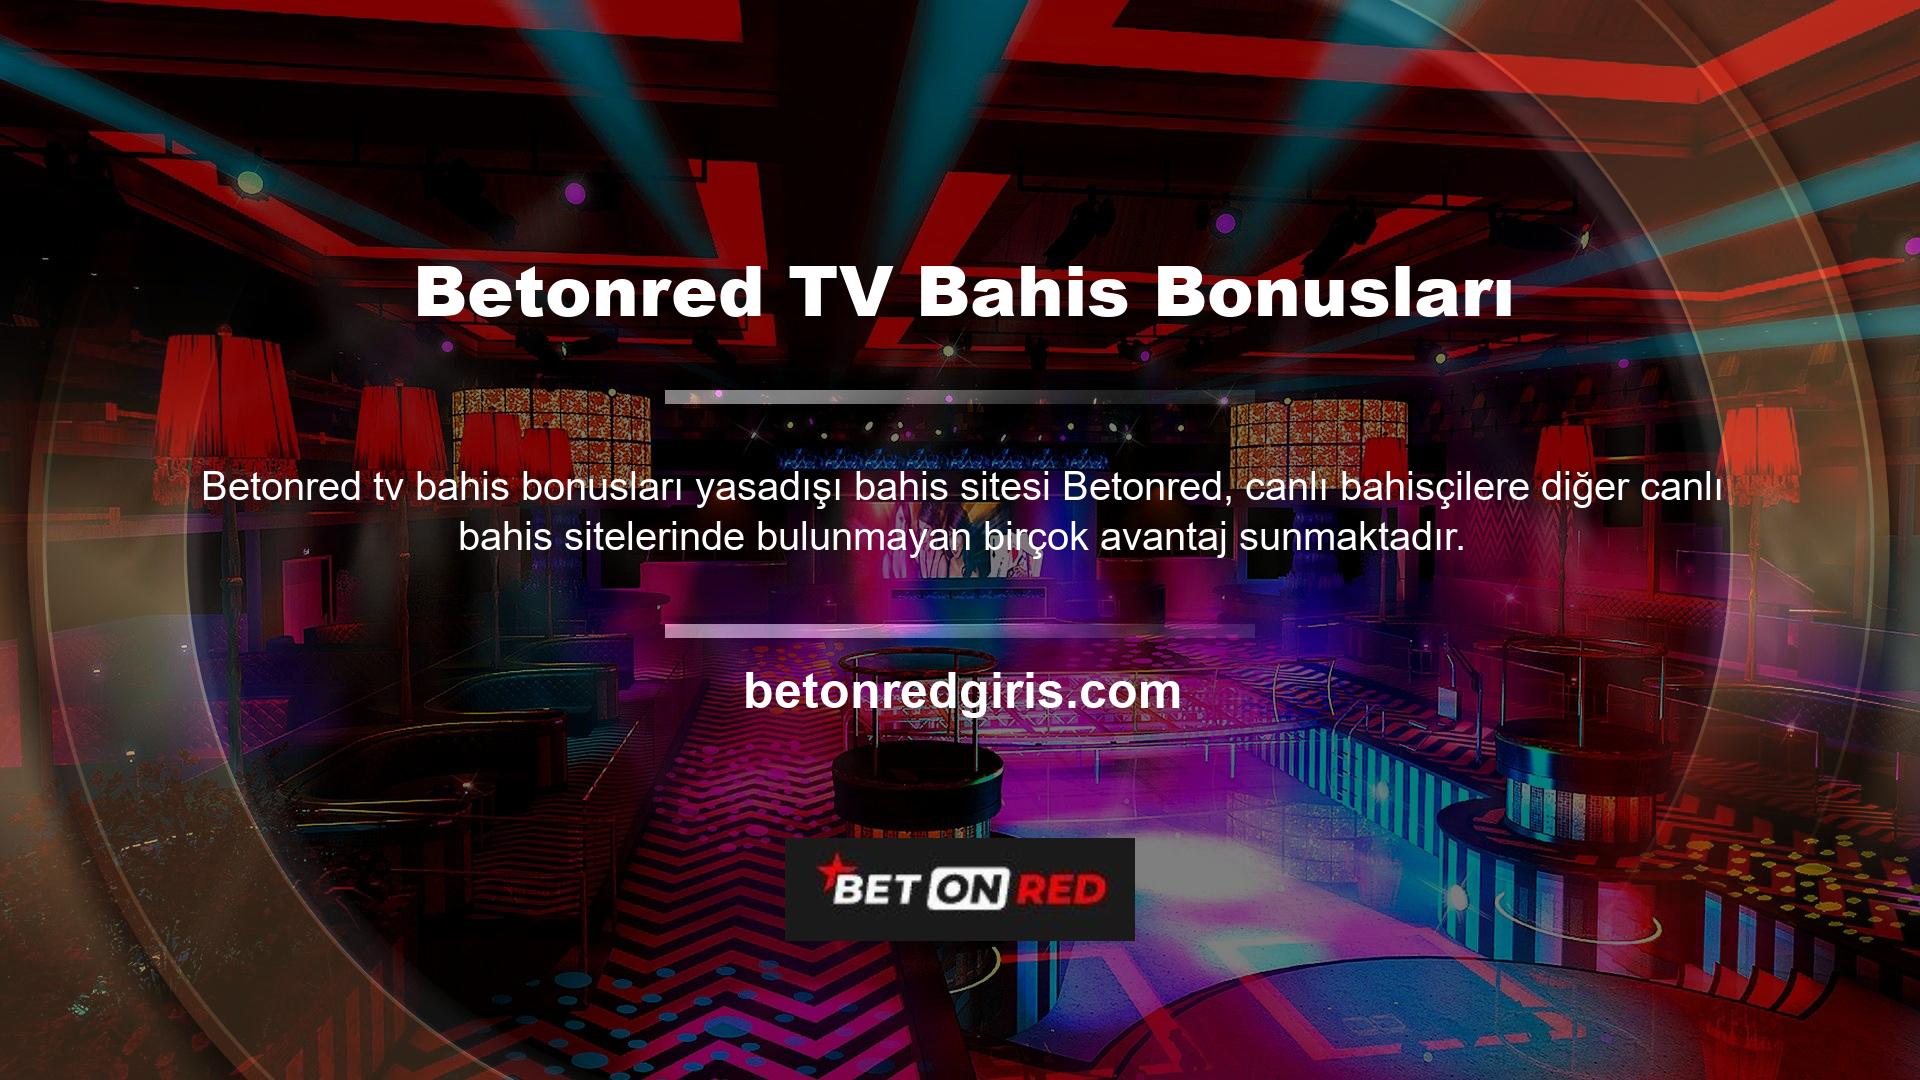 Betonred TV Bahis Bonus TV'si, oyuncuların maçları canlı izlemeleri ve kuponları görmeleri için başvurulacak platformdur